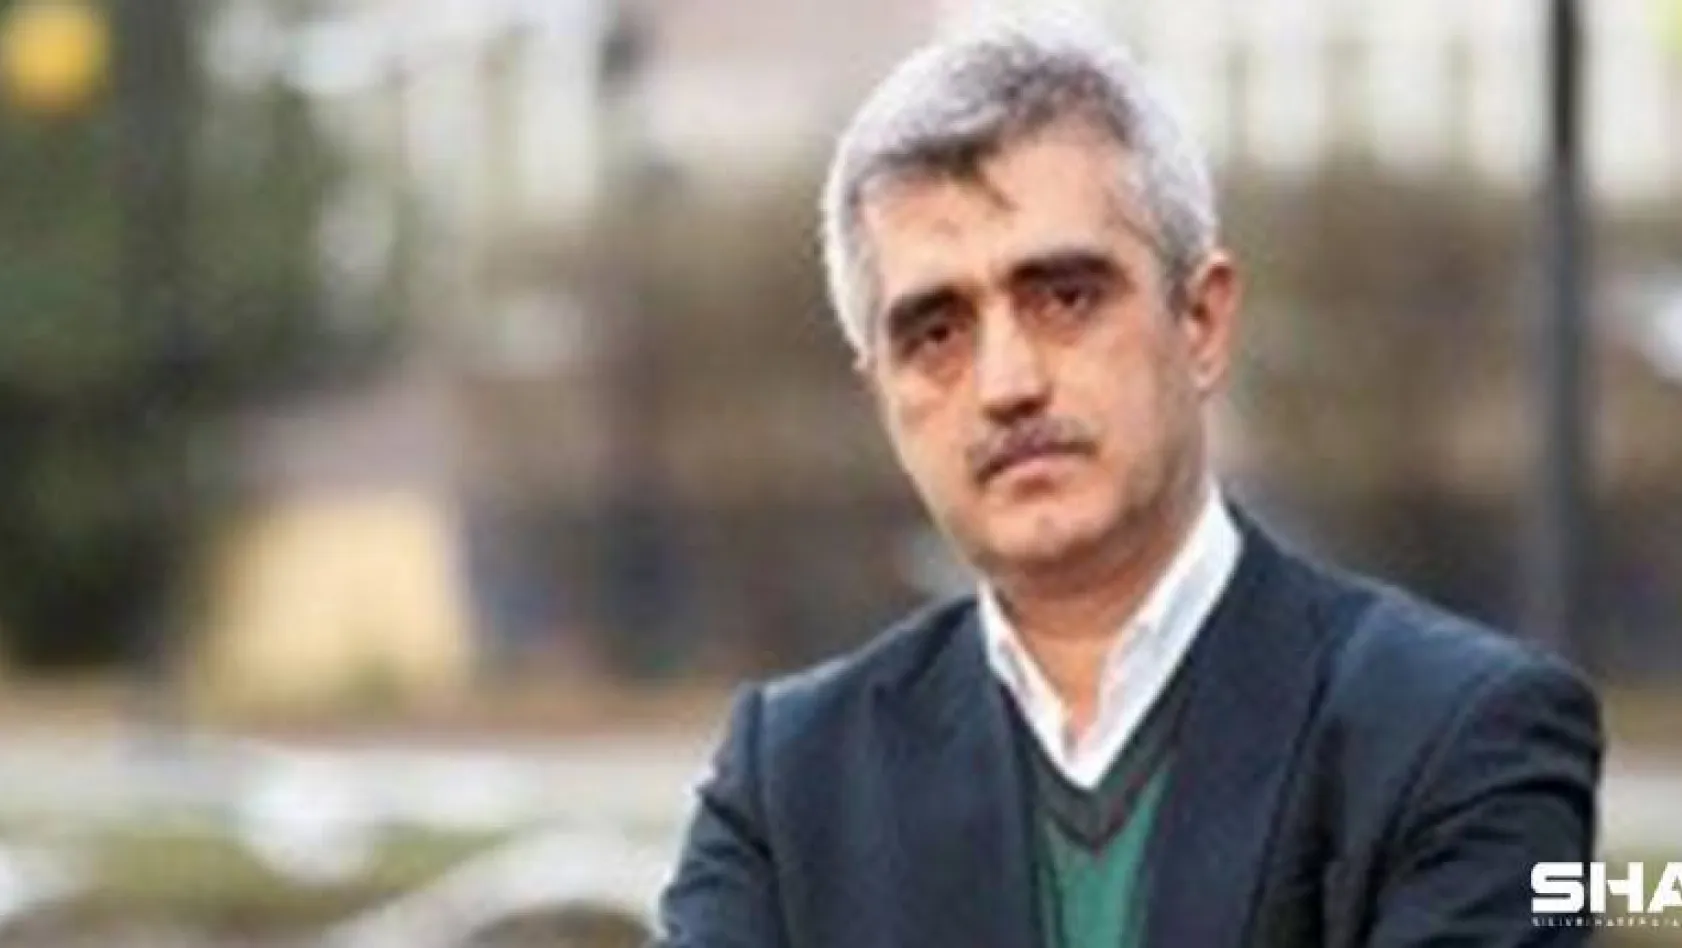 Eski HDP milletvekili Ömer Faruk Gergerlioğlu gözaltına alındı